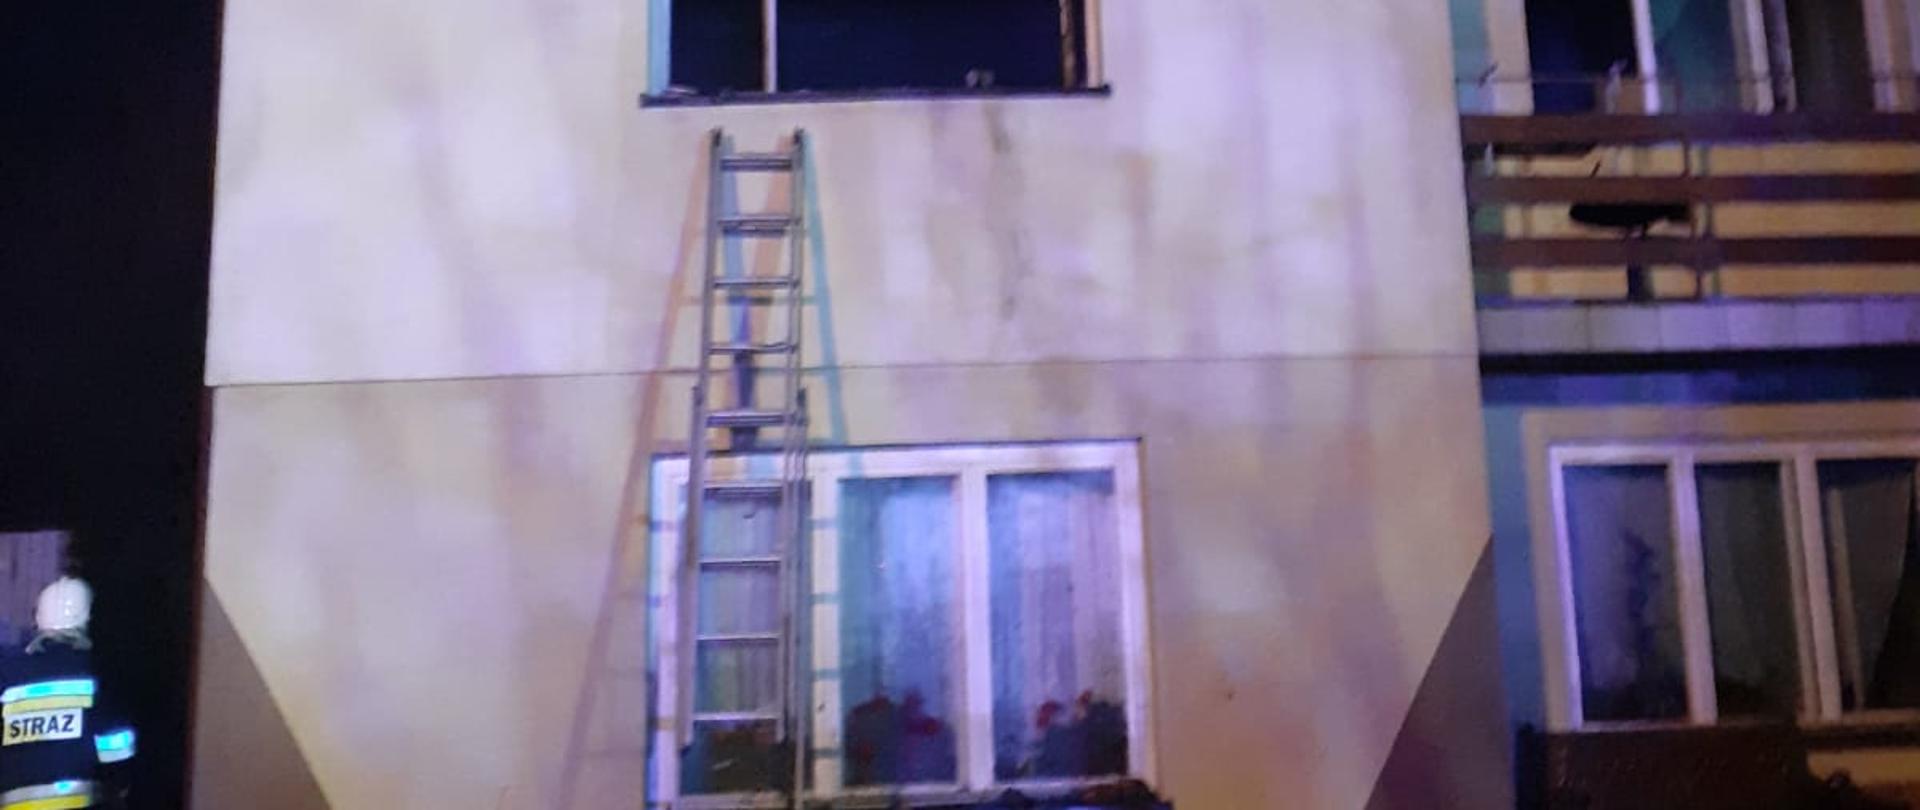 Na zdjęciu widoczny budynek mieszkalny wielokondygnacyjny oraz przystawiona drabina do okna na I piętrze. Z lewej strony obok budynku widoczni strażacy. U dołu zdjęcia znajdują się spalone elementy wyposażenia wnętrza.